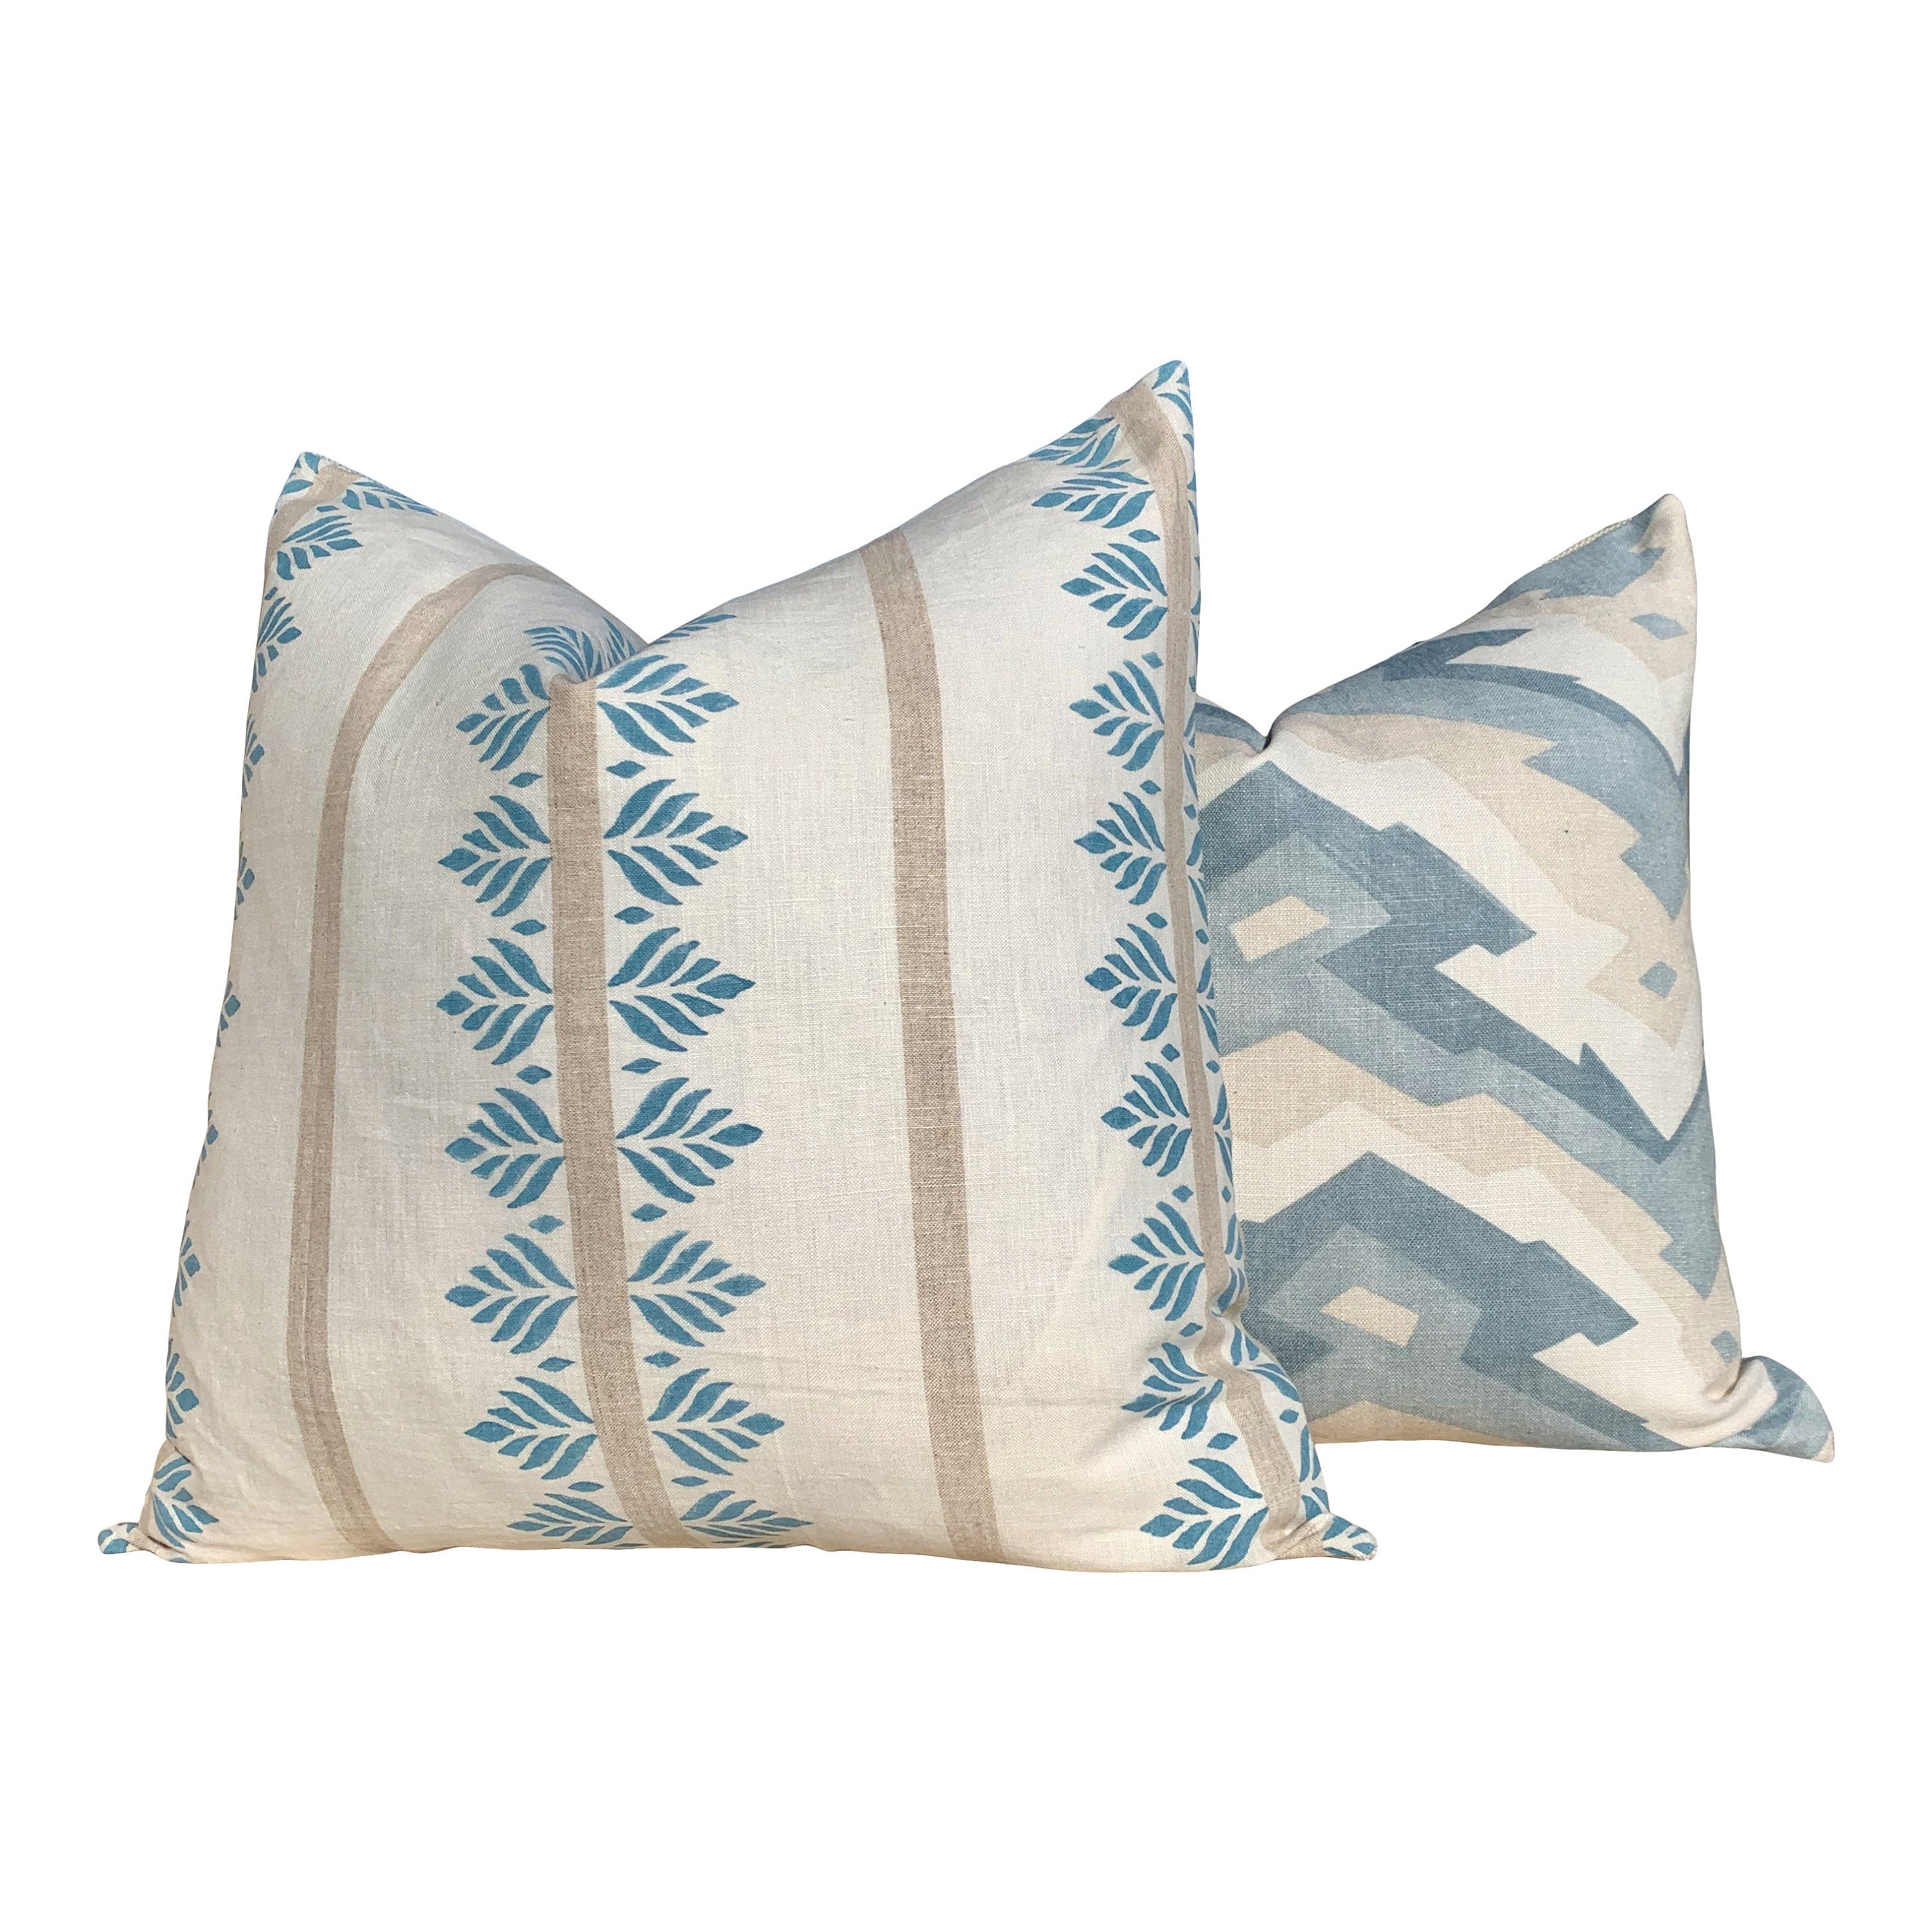 Designer Fern Stripe Pillow in Spa Blue. Accent Stripe Pillow, Decorative Pillow Cover, Designer Throw Pillow, Designer Lumbar Pillow